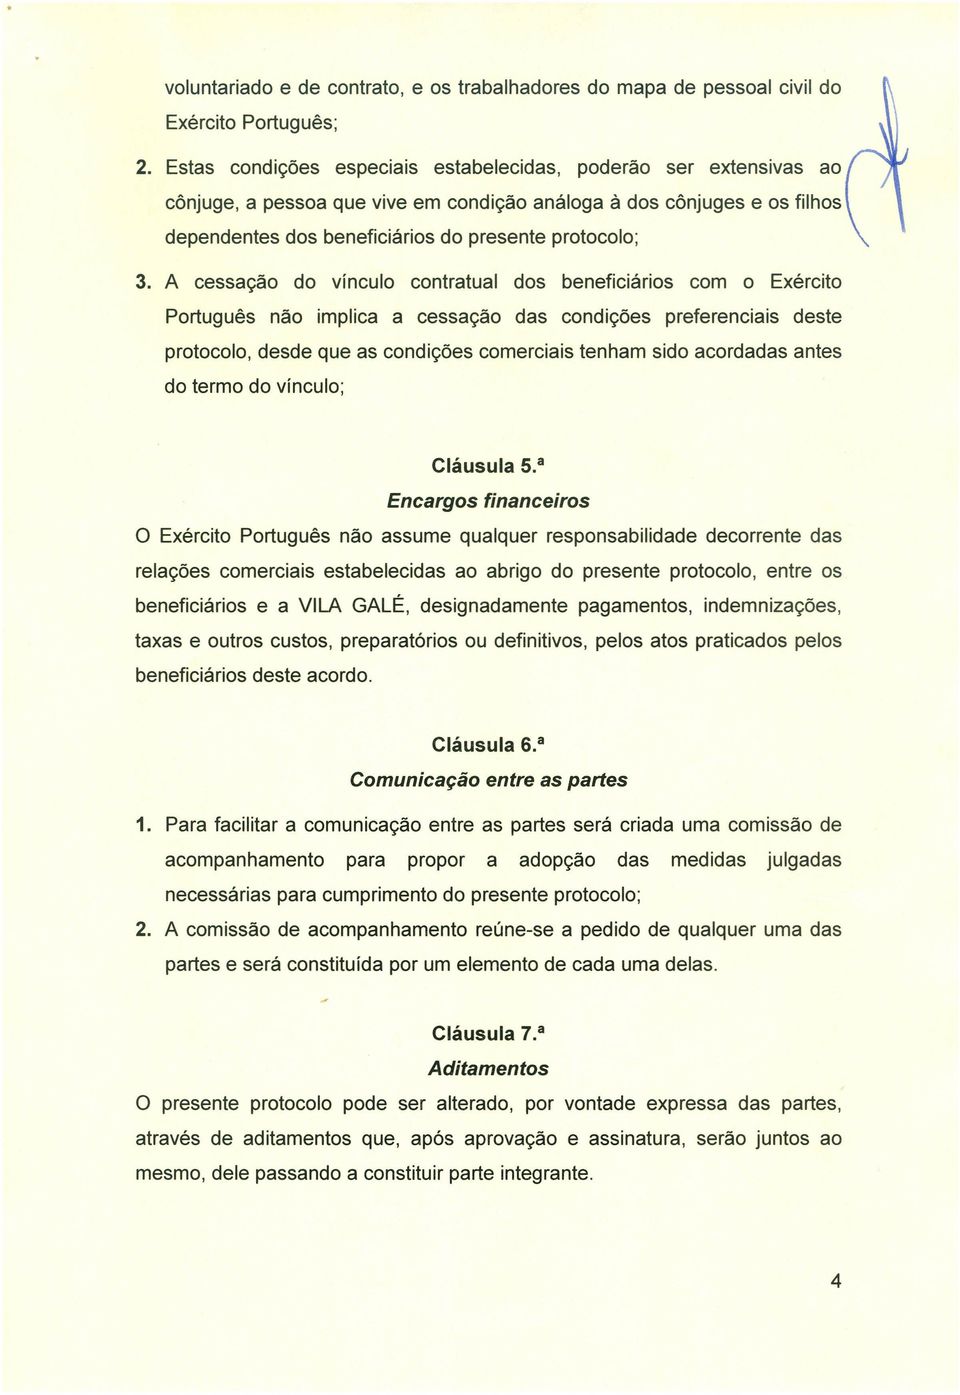 A cessação do vínculo contratual dos beneficiários com o Exército Português não implica a cessação das condições preferenciais deste protocolo, desde que as condições comerciais tenham sido acordadas